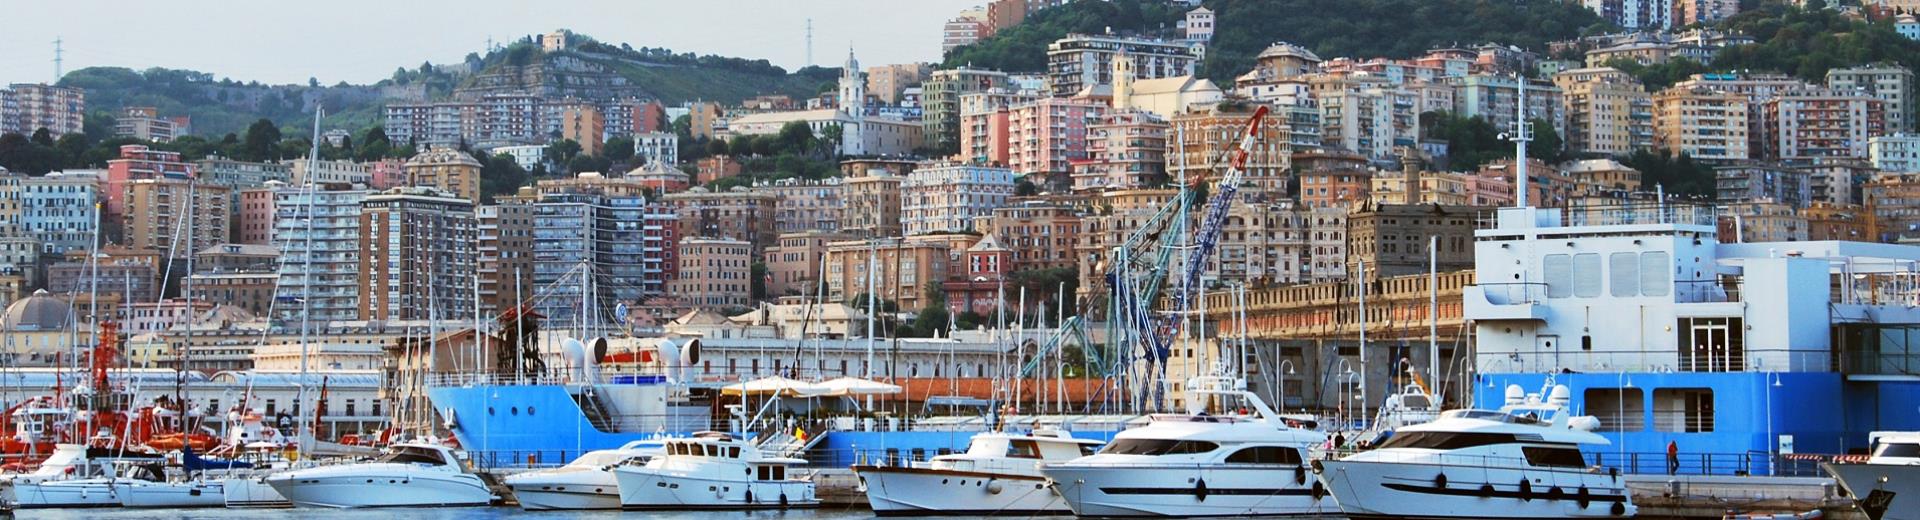 Scopri Genova e i dintorni con il BW Hotel Metropoli Genova centro